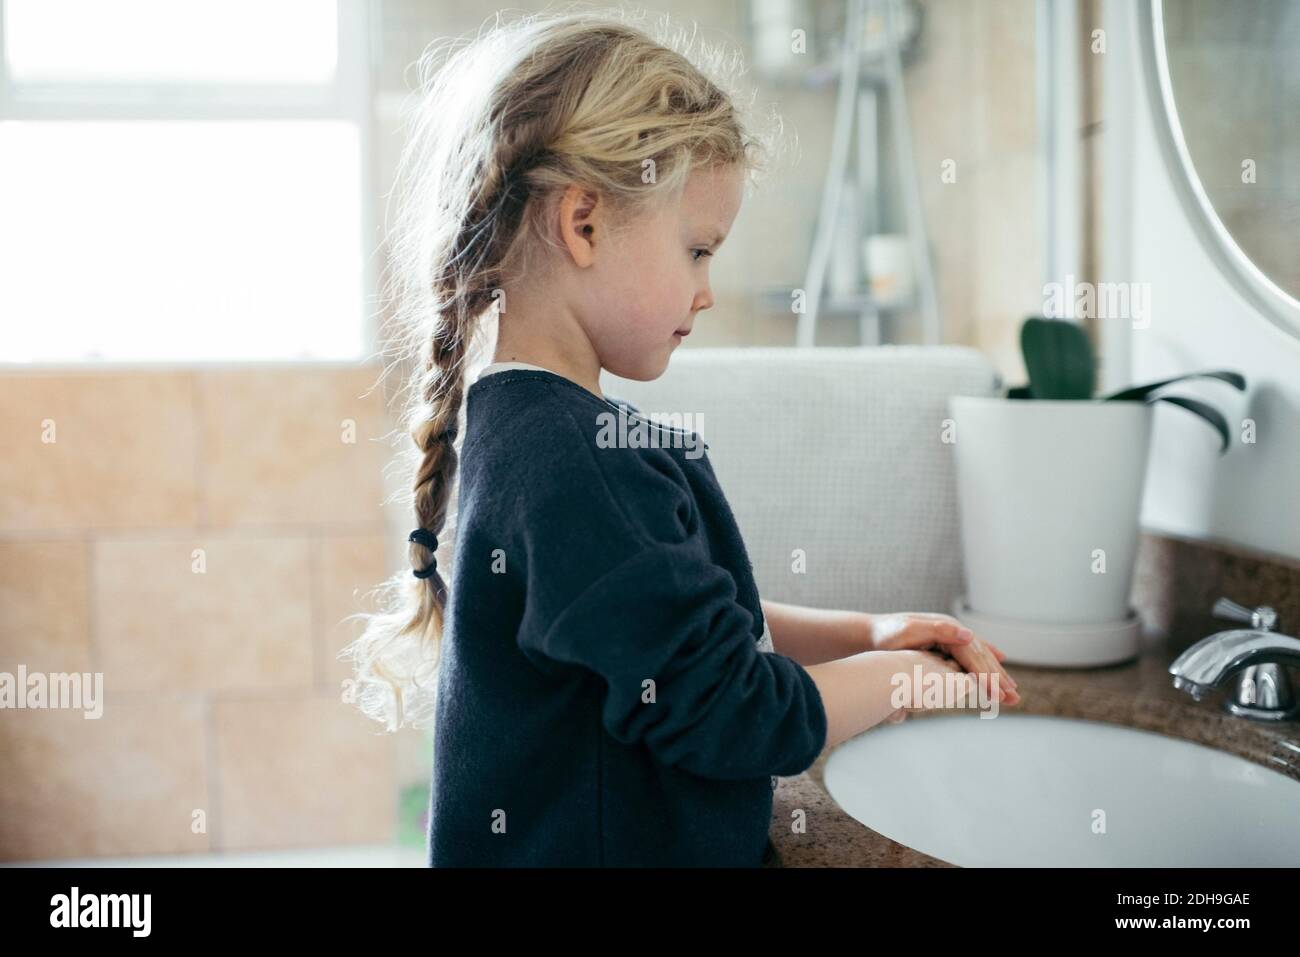 Vue latérale d'une fille se lavant les mains dans le lavabo de la salle de bains Banque D'Images